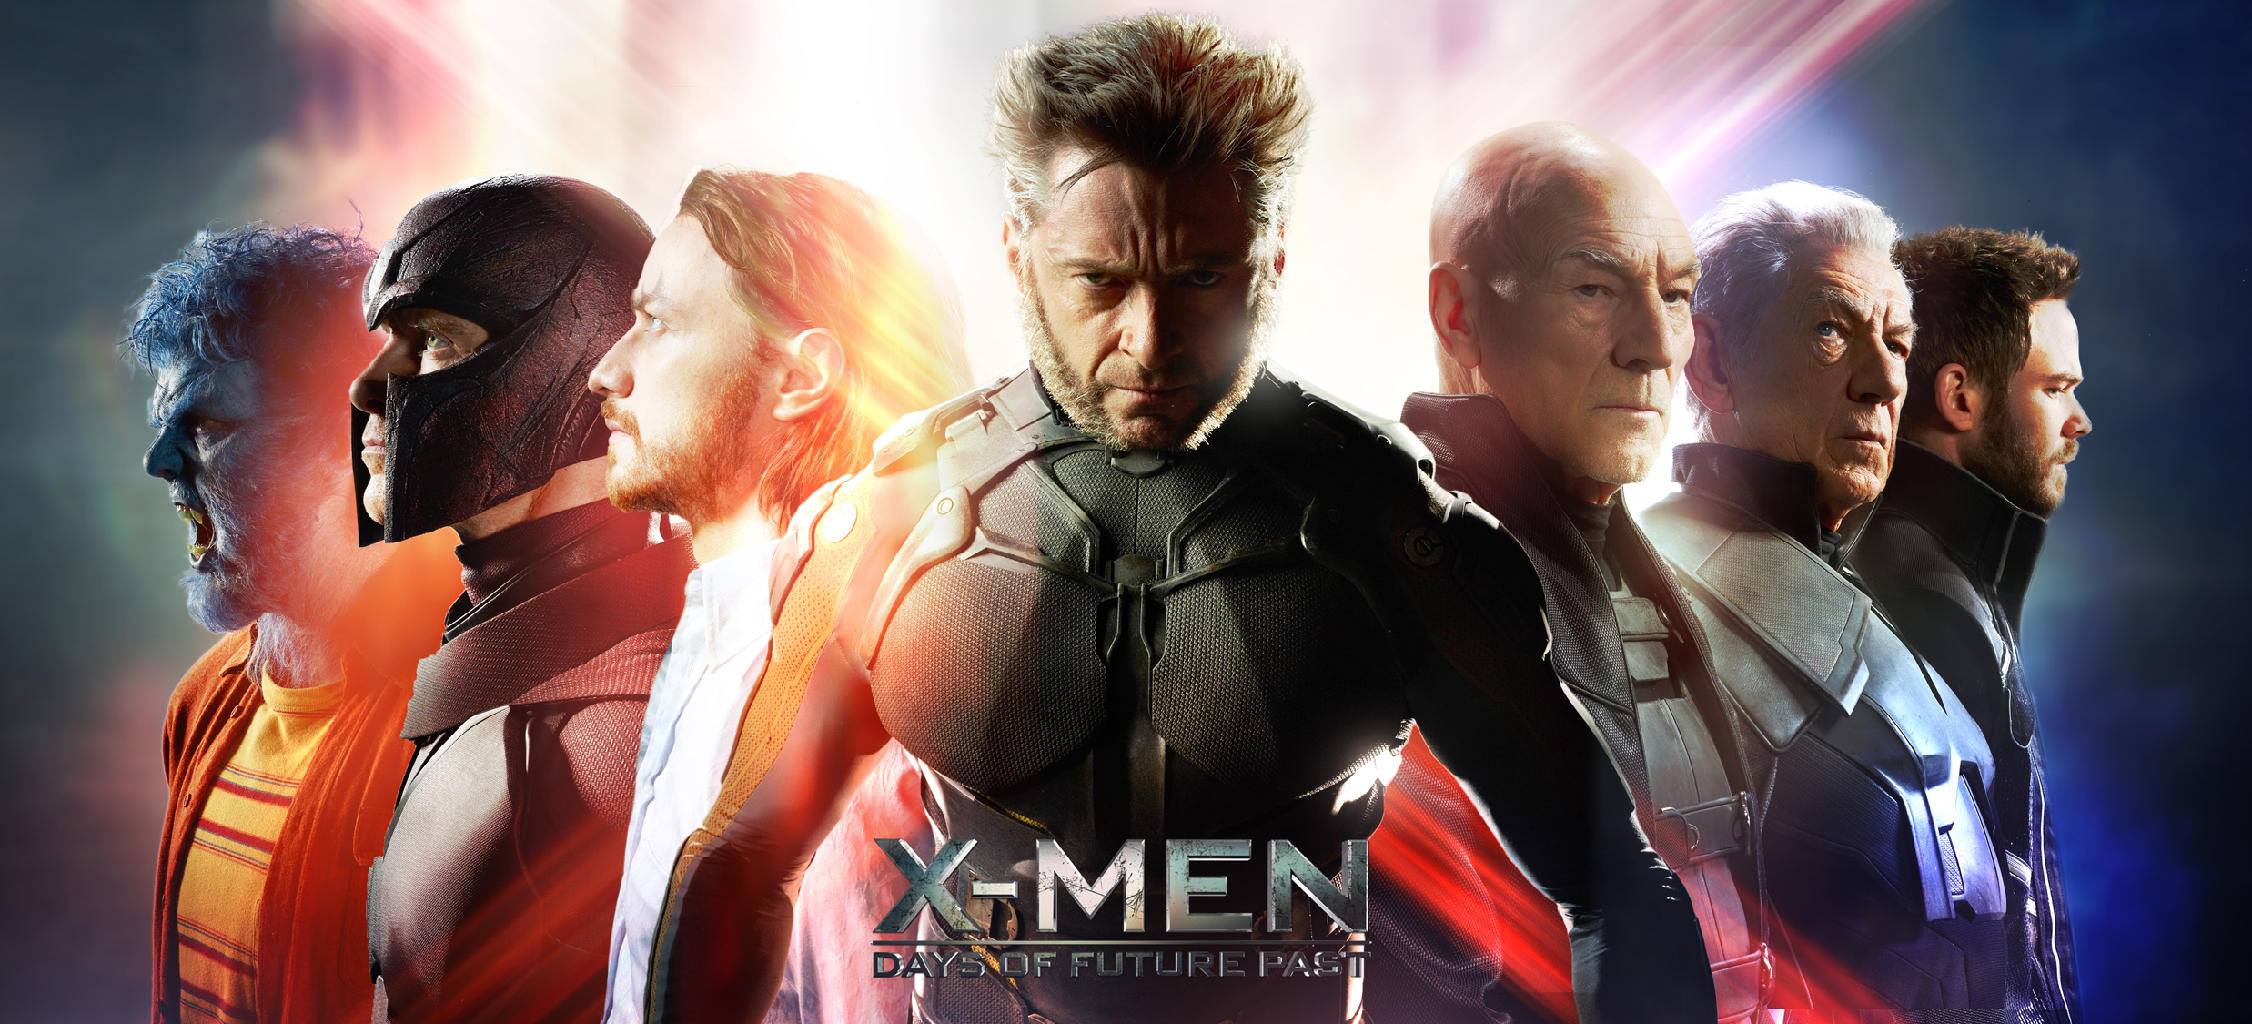 วิจารณ์ X-Men: Days of Future Past เอ็กซ์เมน: สงครามวันพิฆาตกู้อนาคต